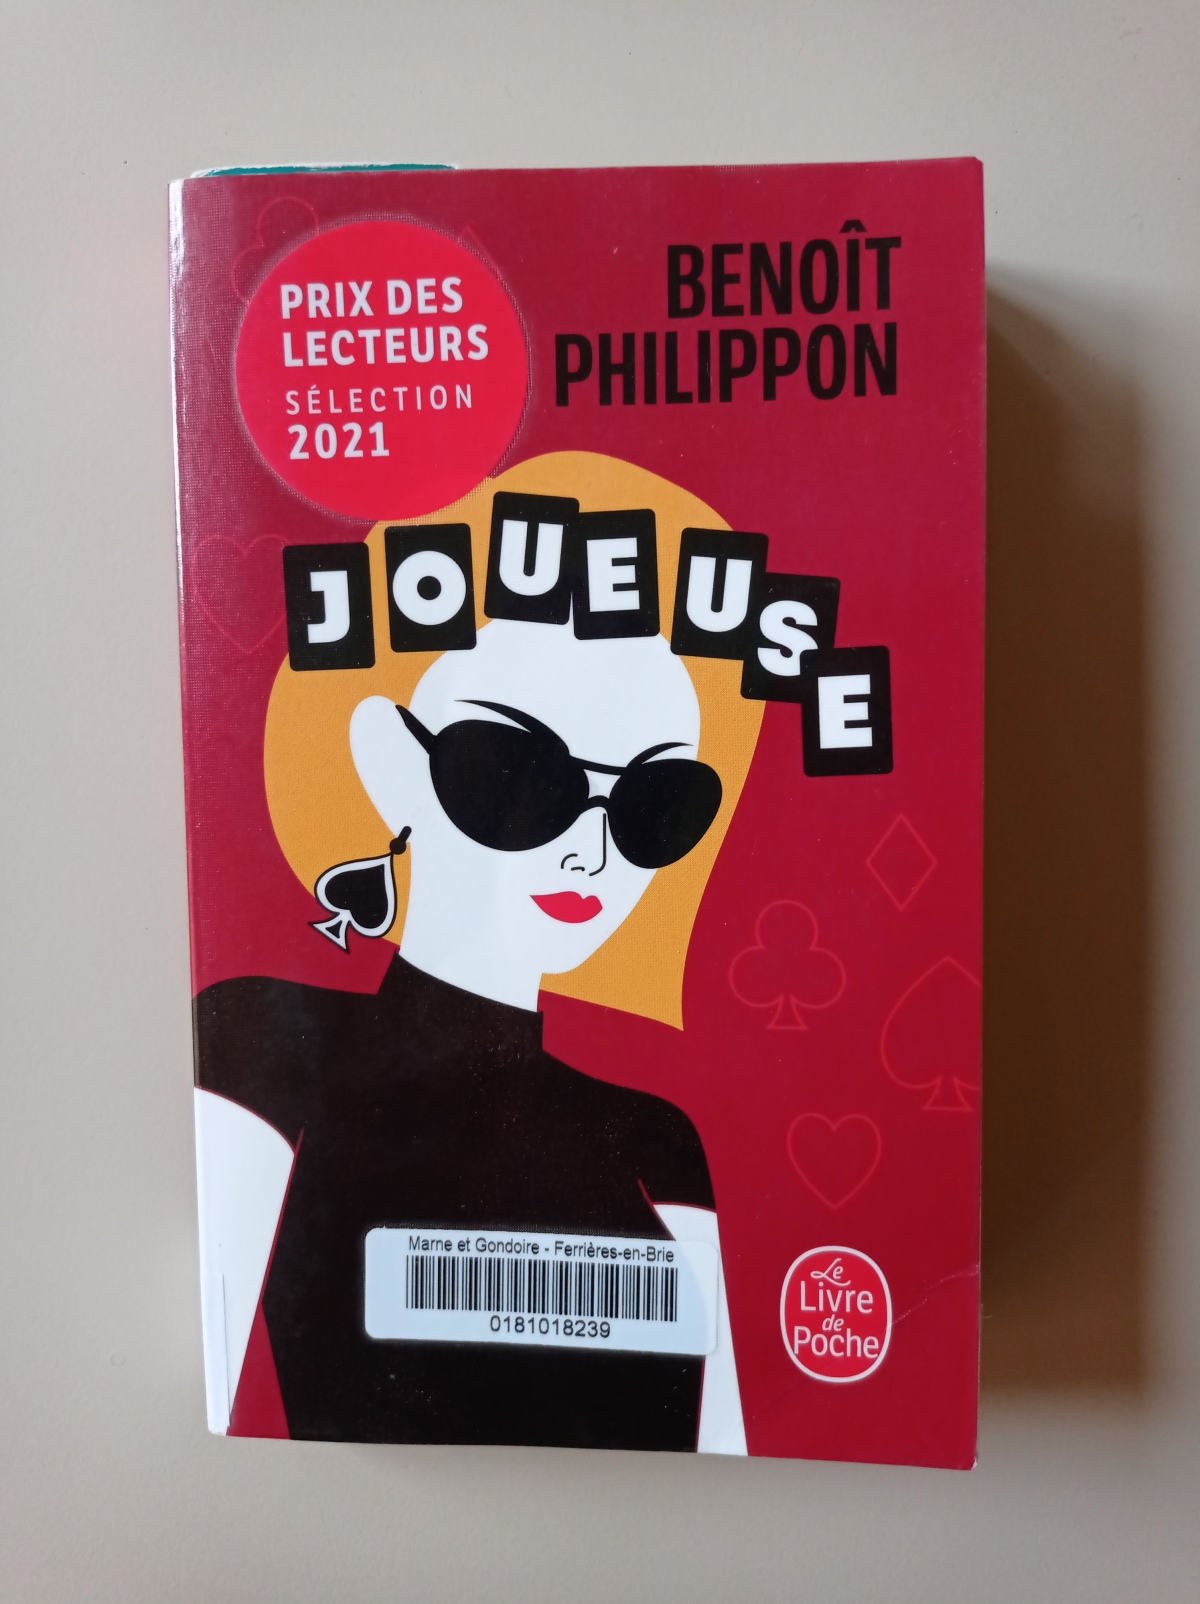 Joueuse / Benoît Philippon